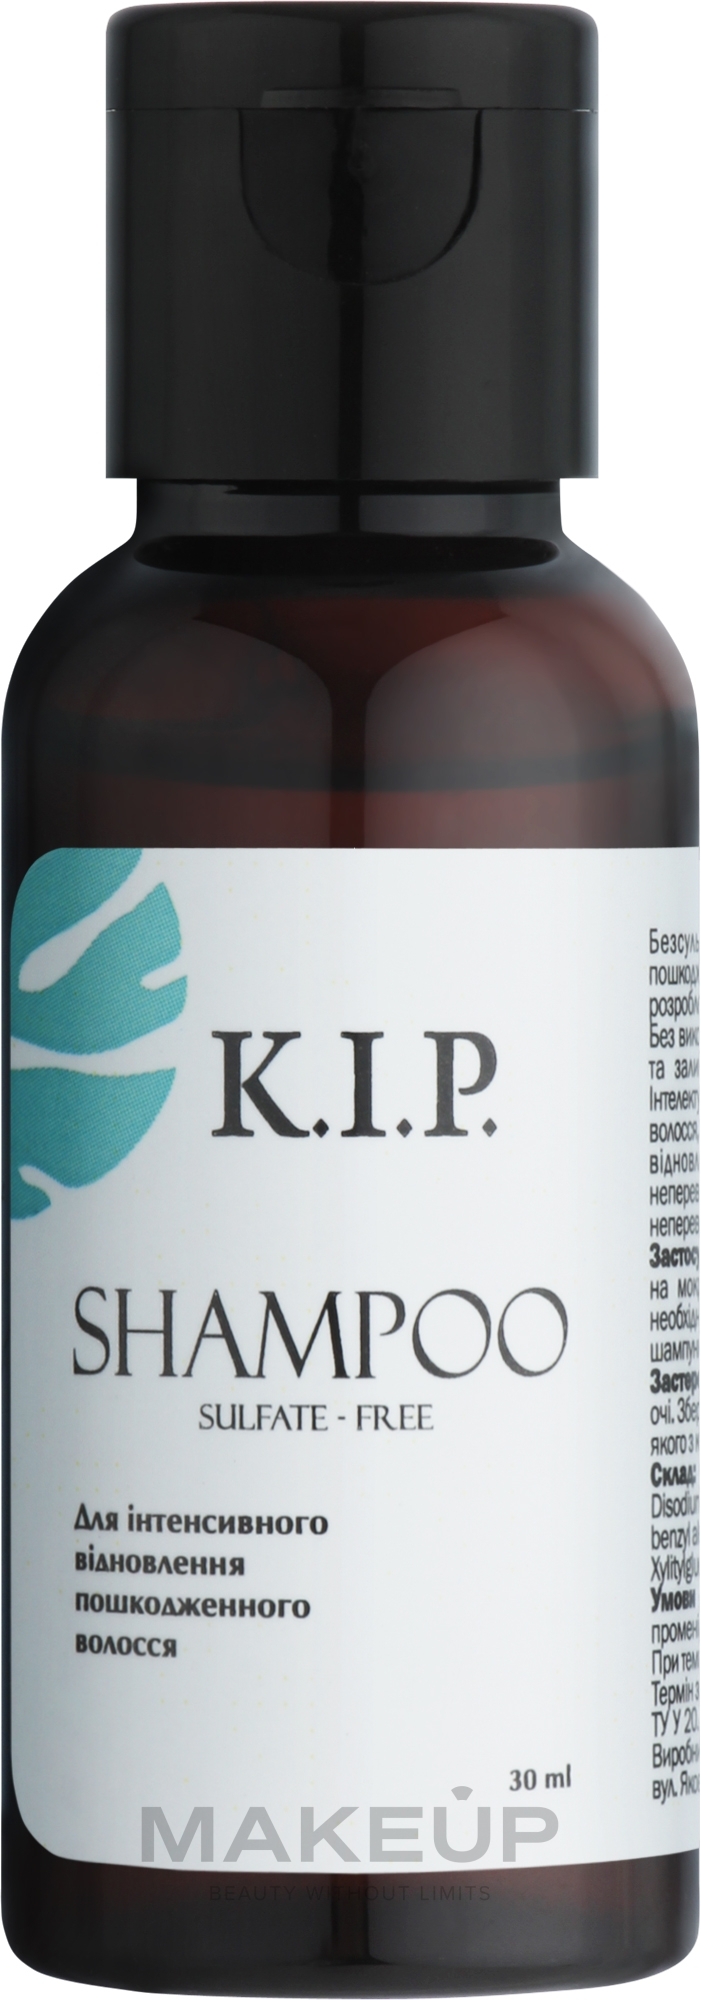 Бессульфатный шампунь для интенсивного восстановления поврежденных волос - K.I.P. Shampoo (пробник) — фото 30ml